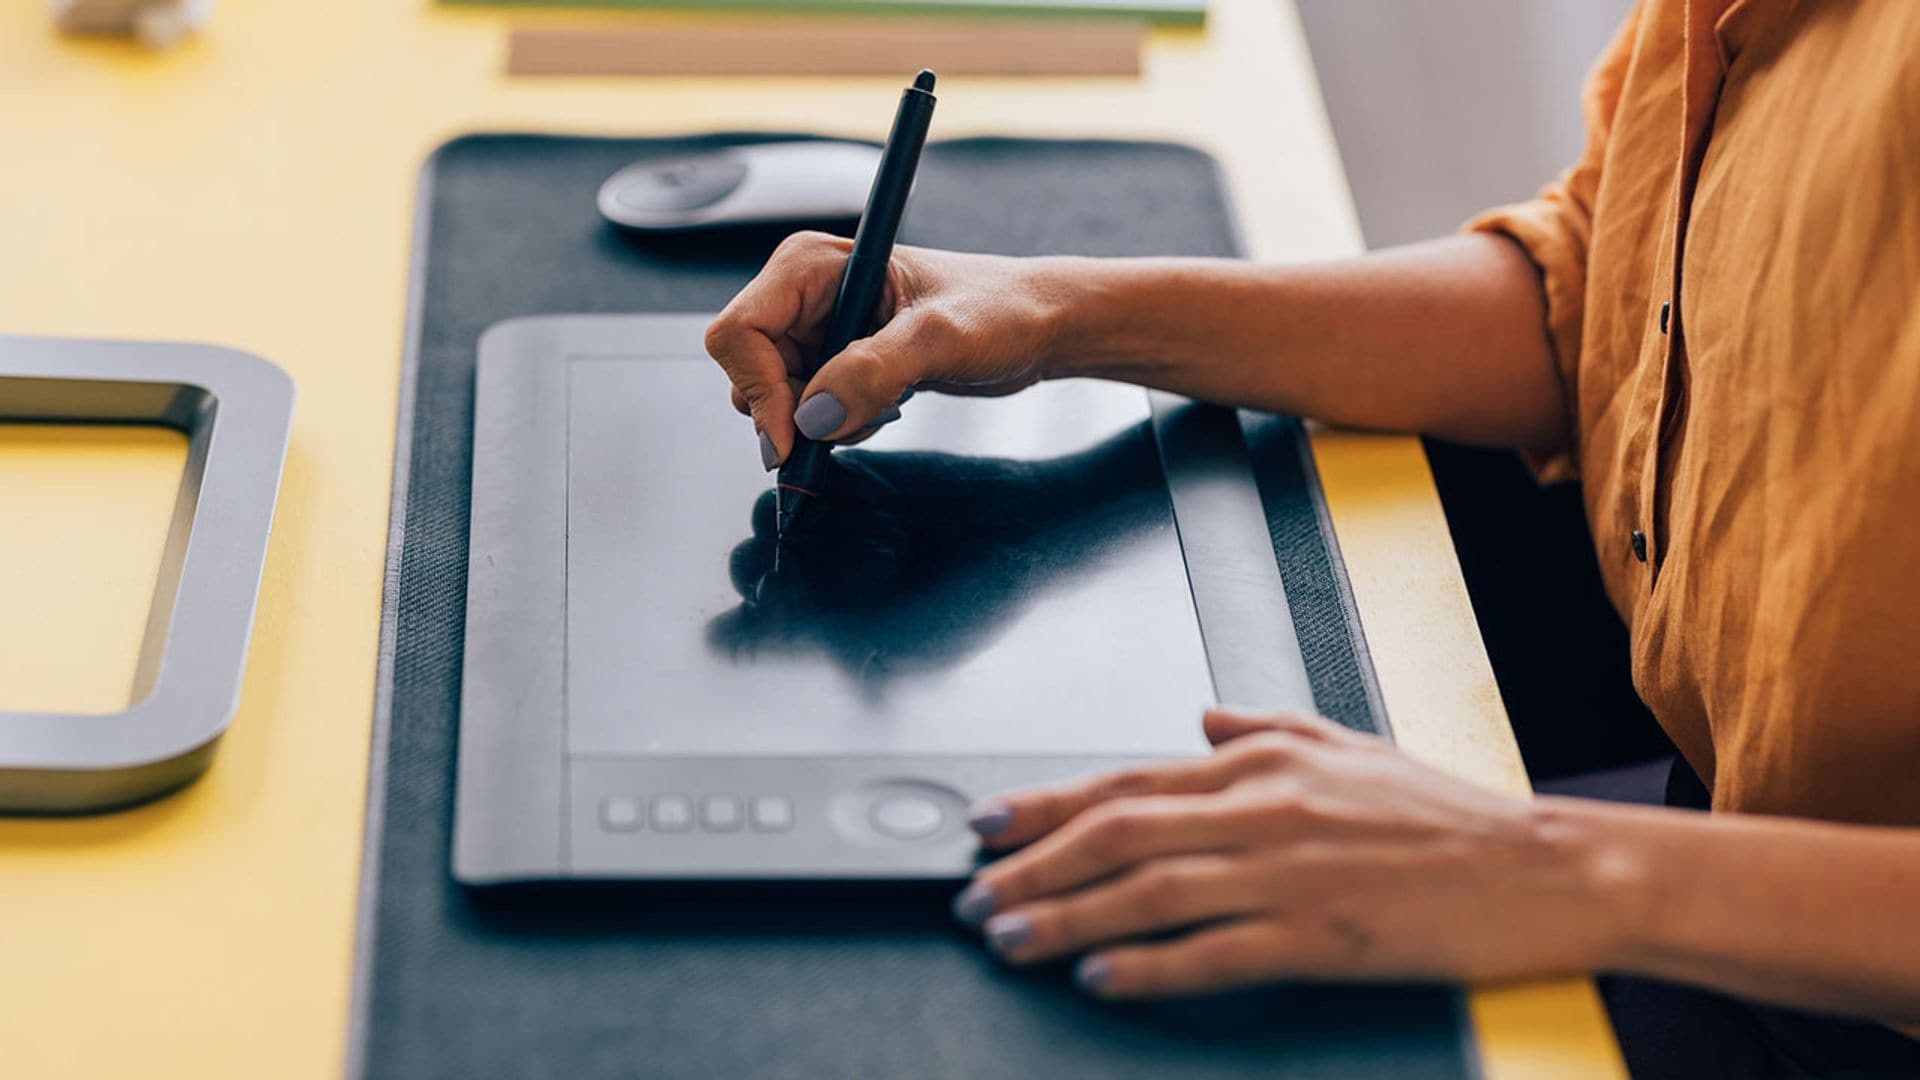 Estas son las mejores tabletas gráficas para dibujo digital y firmar documentos